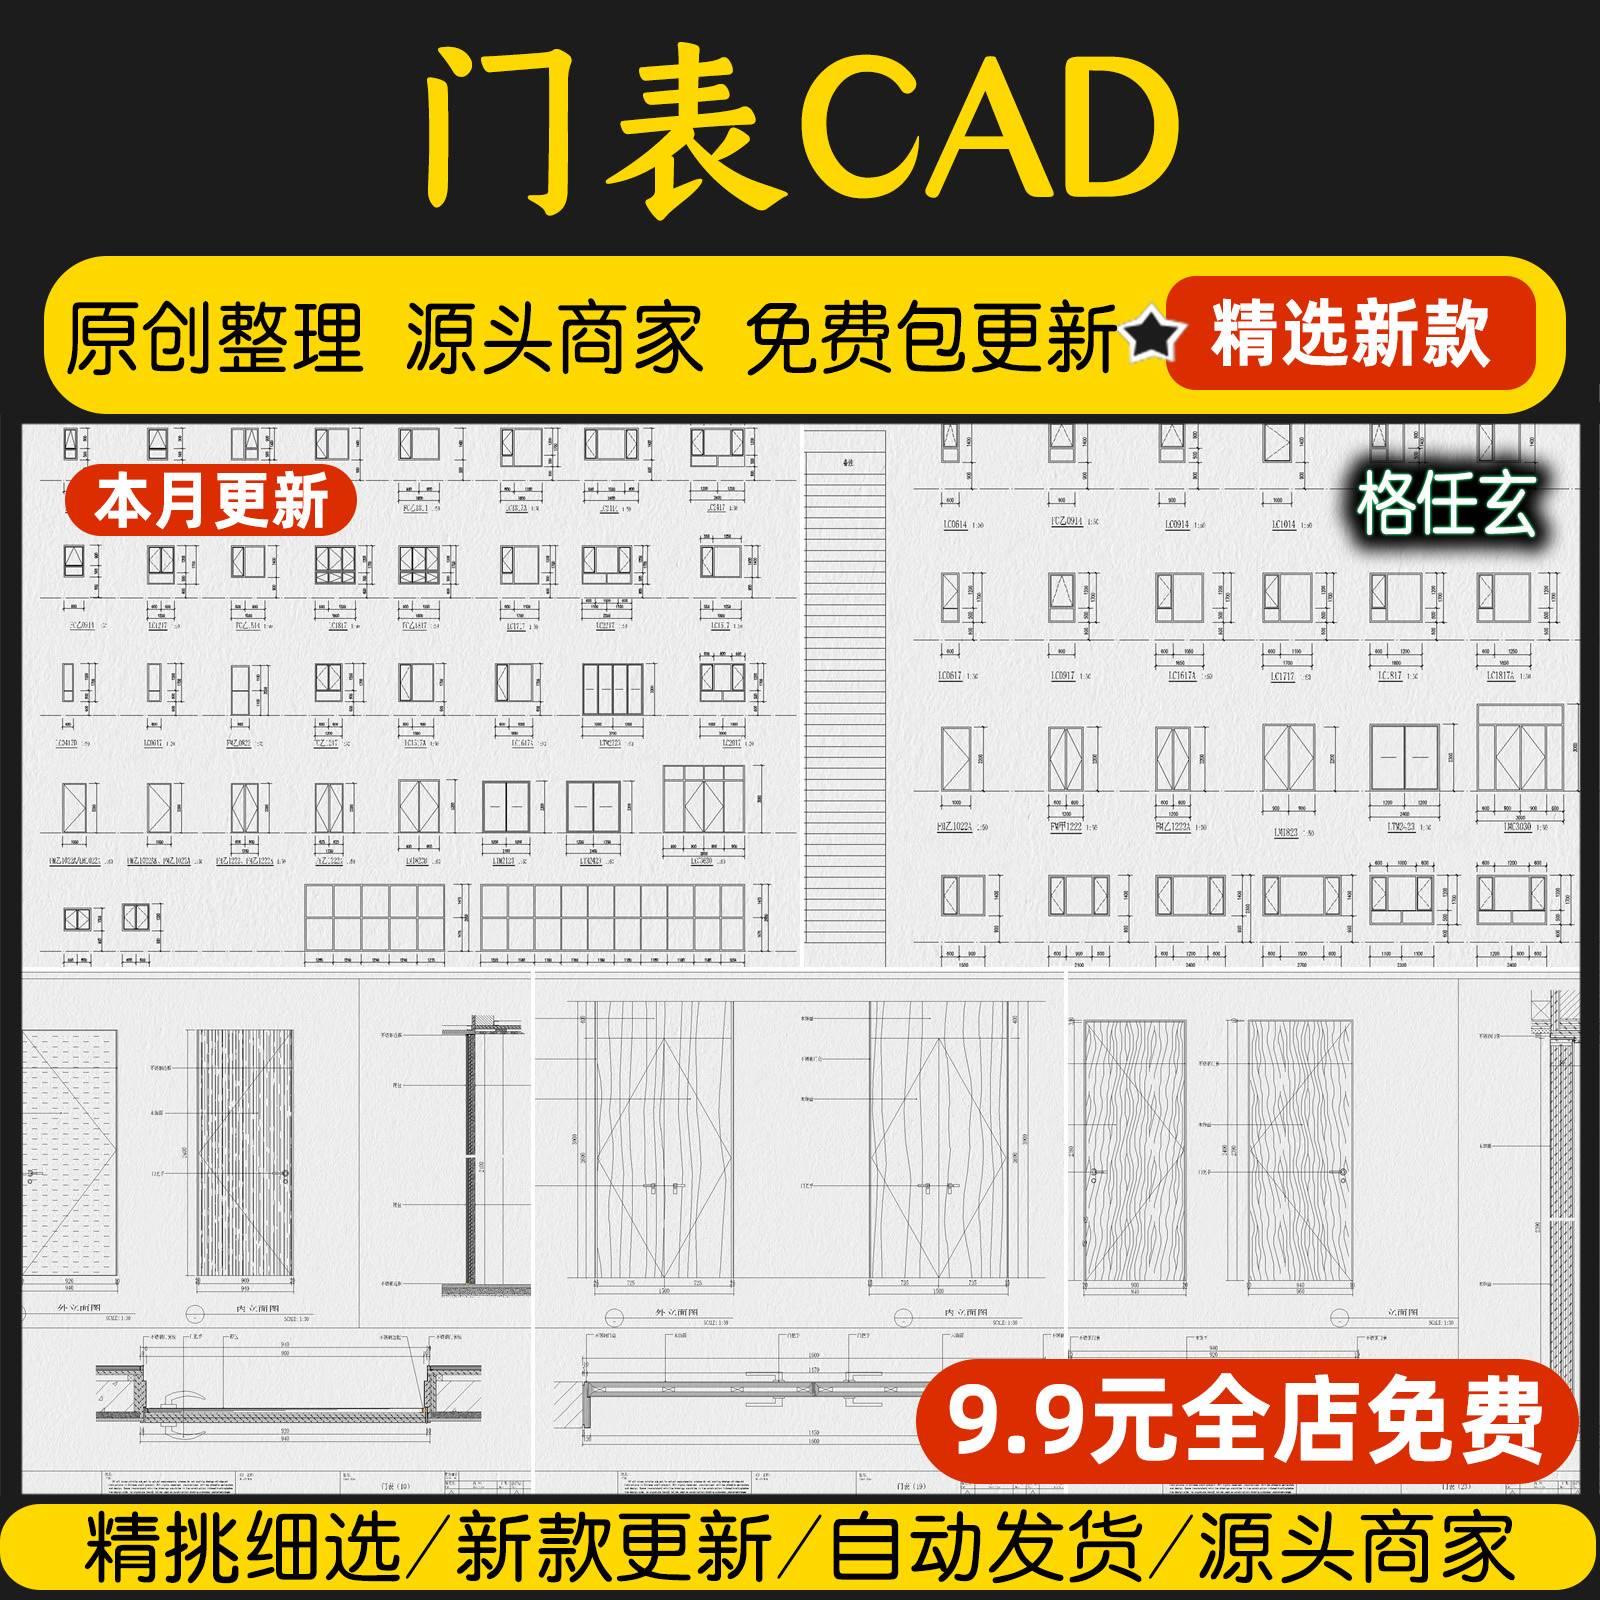 门表详图CAD节点大样图标准建筑门窗表通用图集CAD图库施工图素材